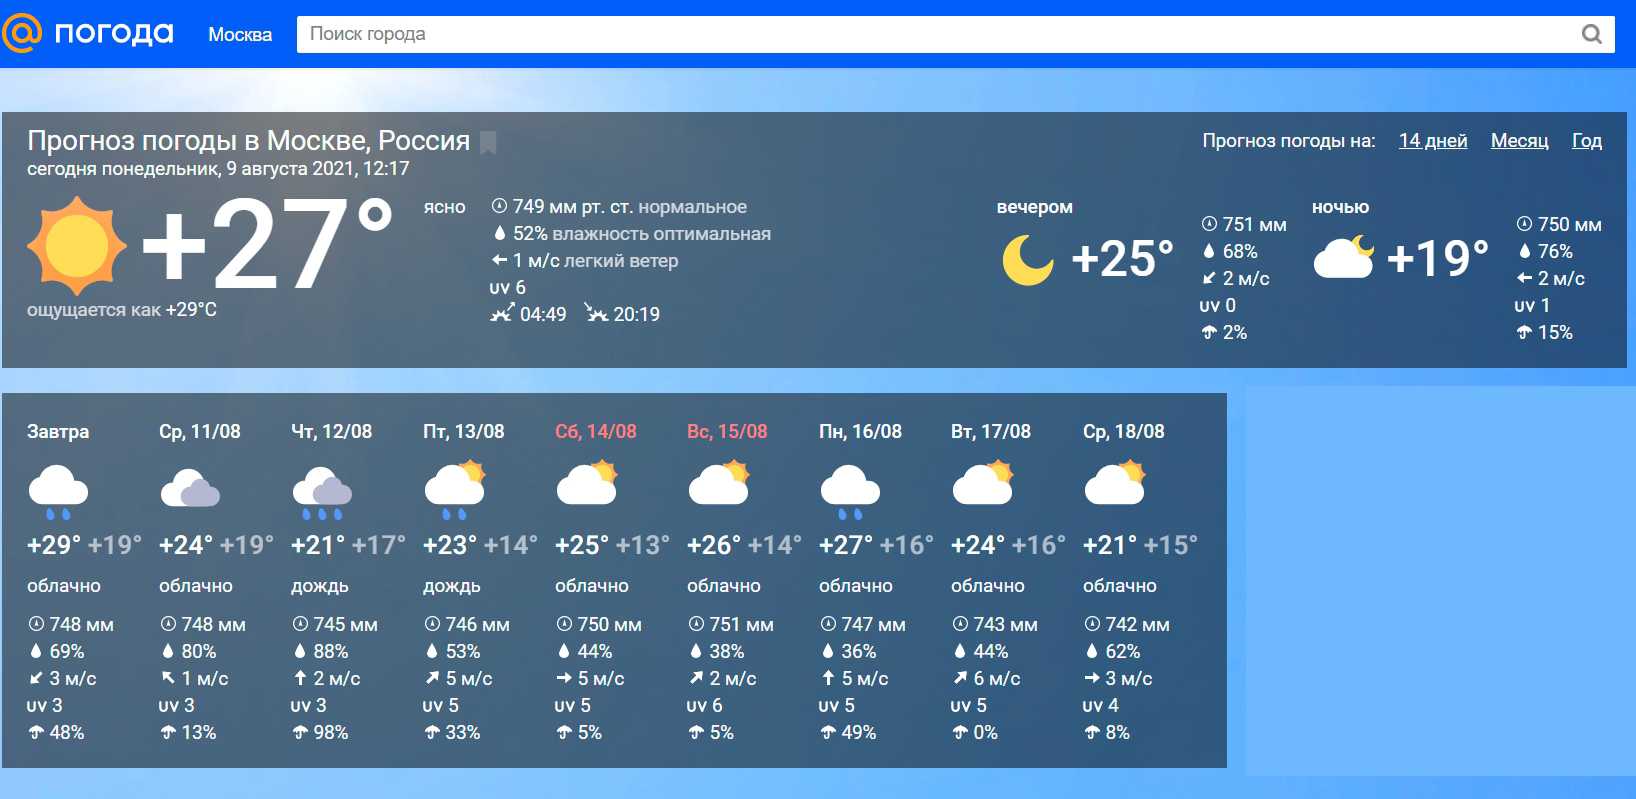 Нова сайт погоды. Наиболее точный прогноз погоды.. Прогноз погоды в Москве. Какой лучший сайт прогноза погоды. Какая погода самая точная.